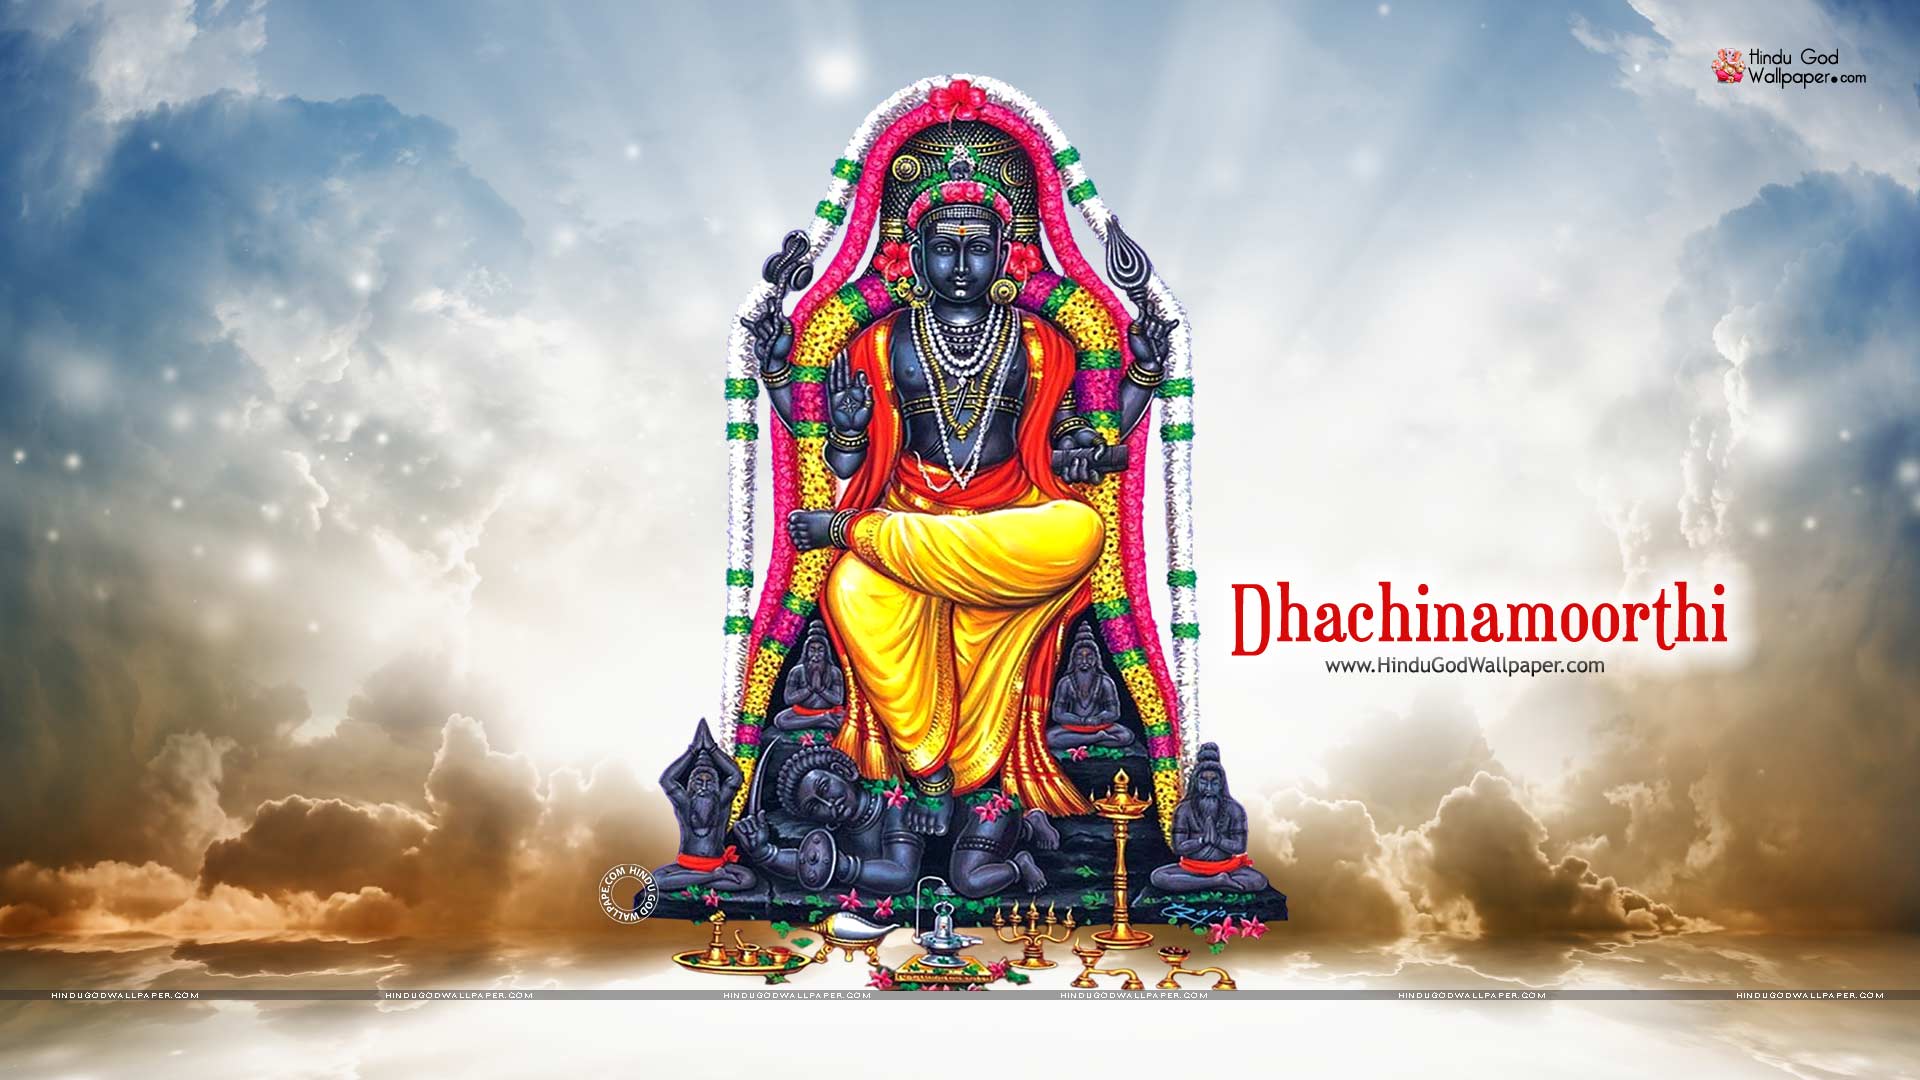 Dhachinamoorthi God HD Wallpaper Image Photo Free Download